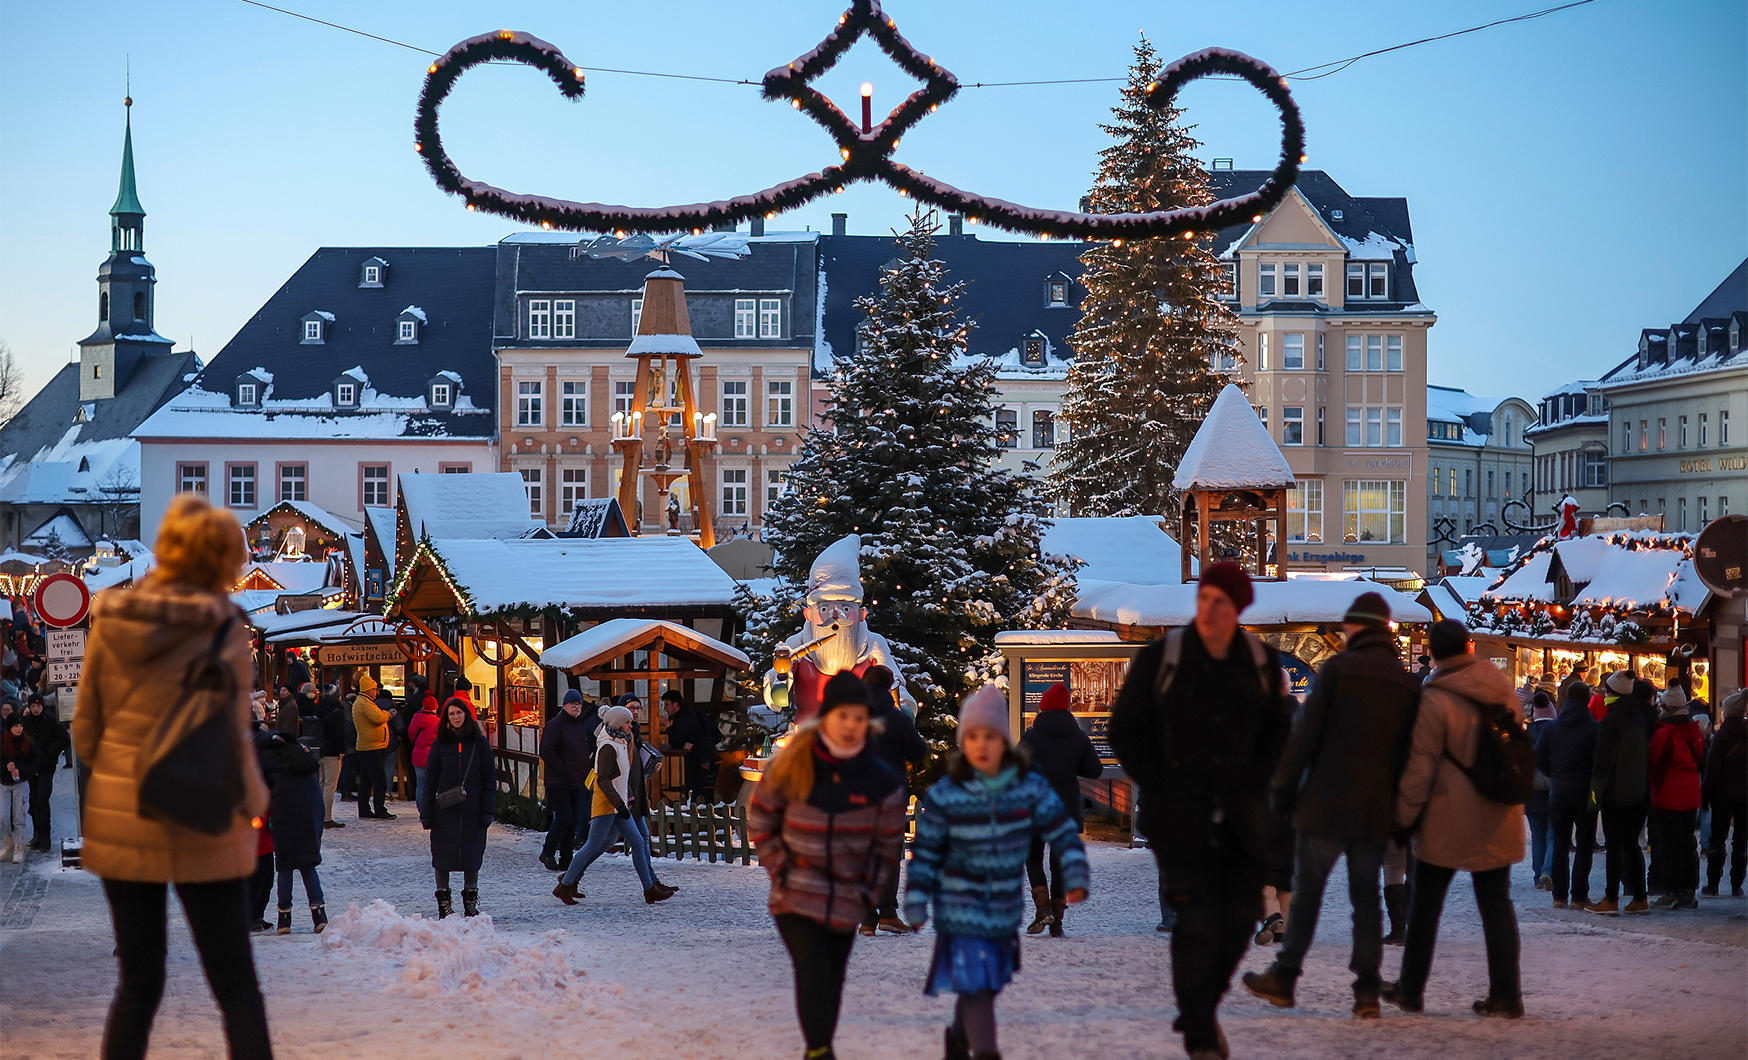 Bộ ảnh mùa đông trên thế giới: Người Đức đón mùa Giáng sinh đúng nghĩa, miền Bắc Trung Quốc bước vào mùa du lịch lớn nhất trong năm - Ảnh 12.